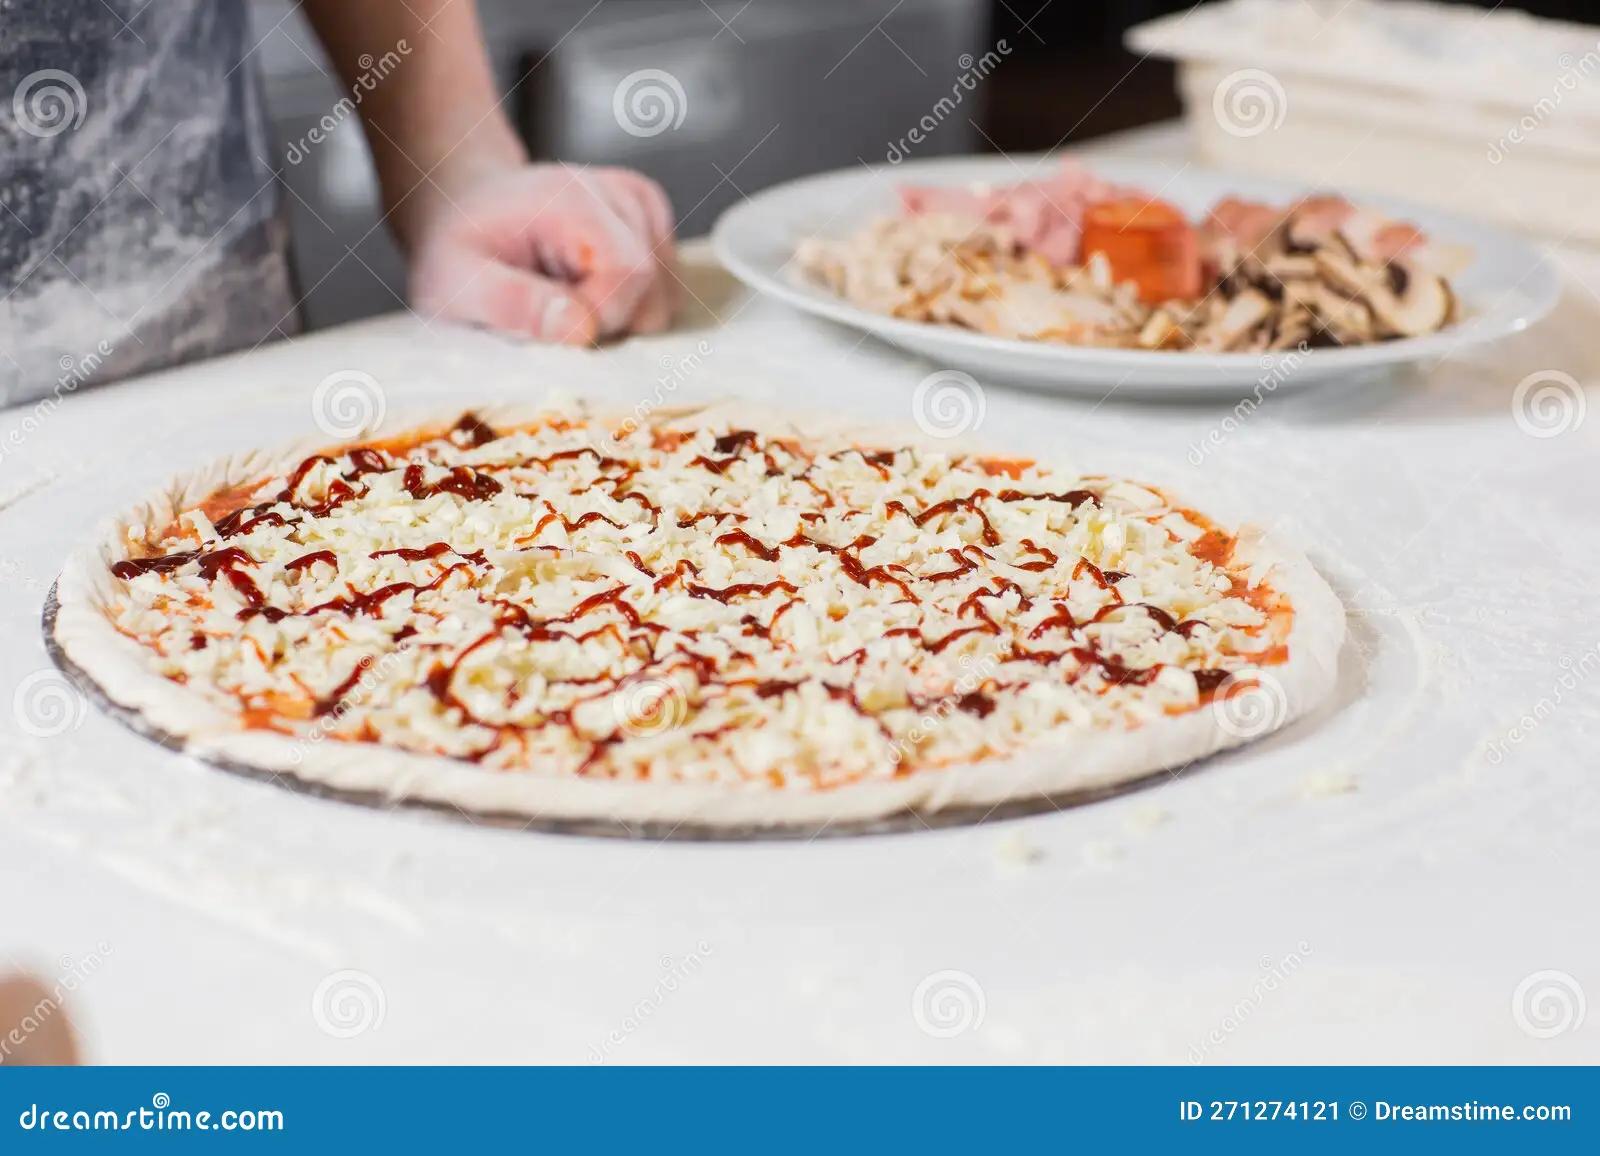 comer pizza cruda - Cómo saber si la masa está cruda